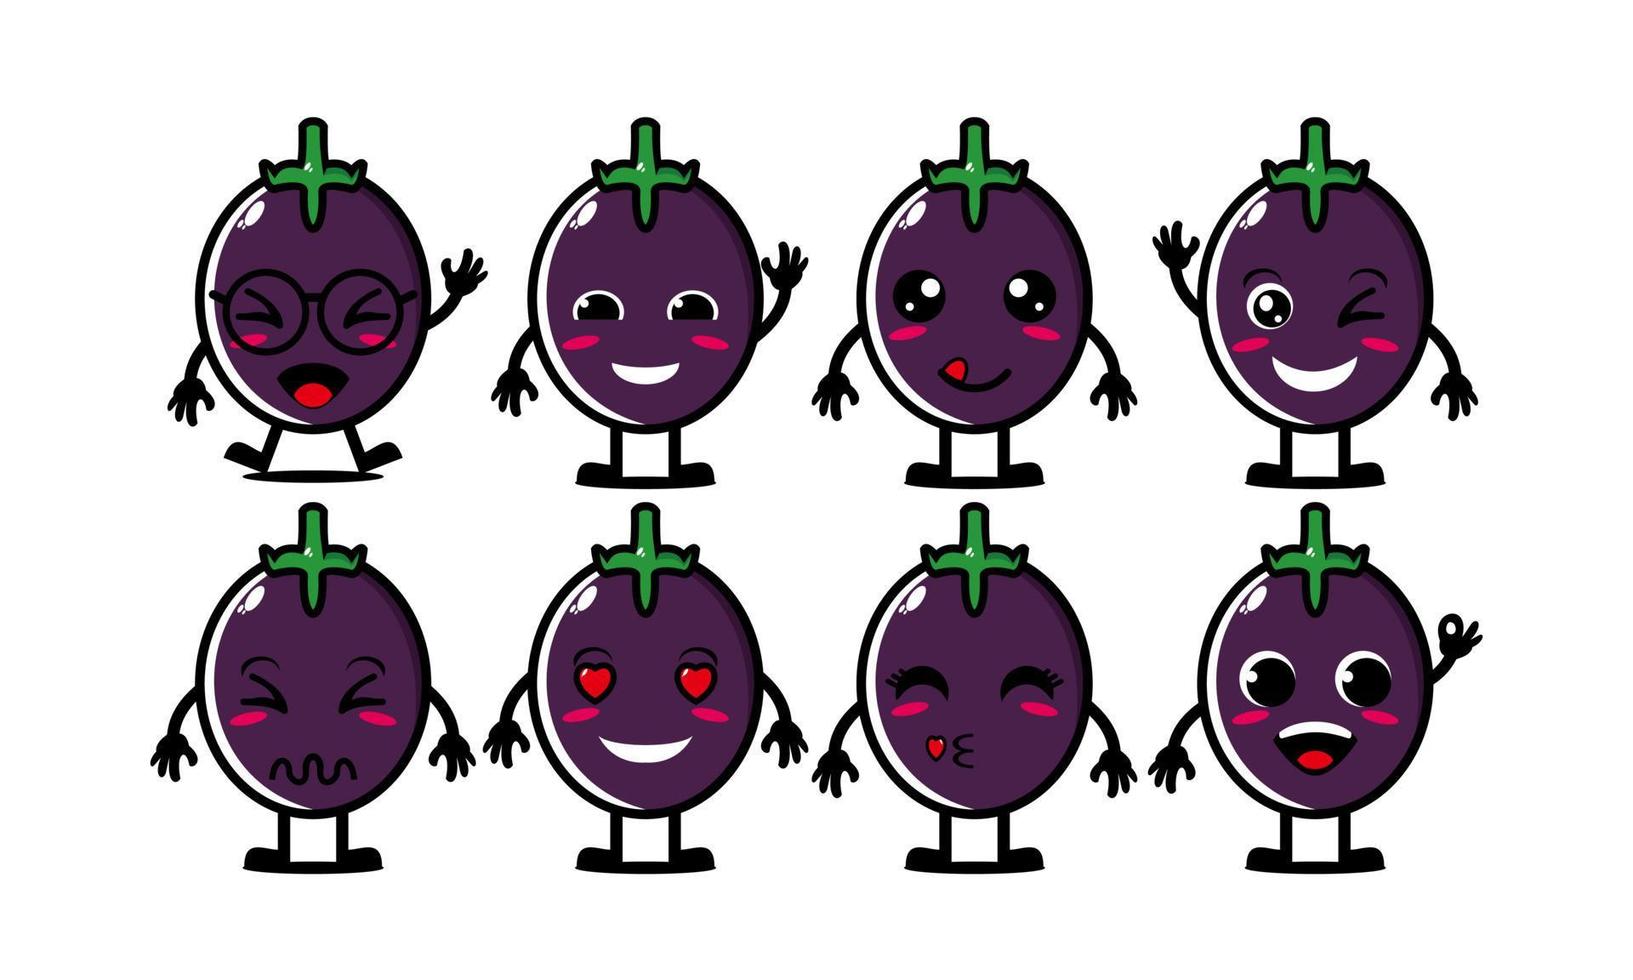 schattige lachende grappige aubergine groente set collection.vector platte cartoon gezicht karakter mascotte illustratie .isolated op witte achtergrond vector